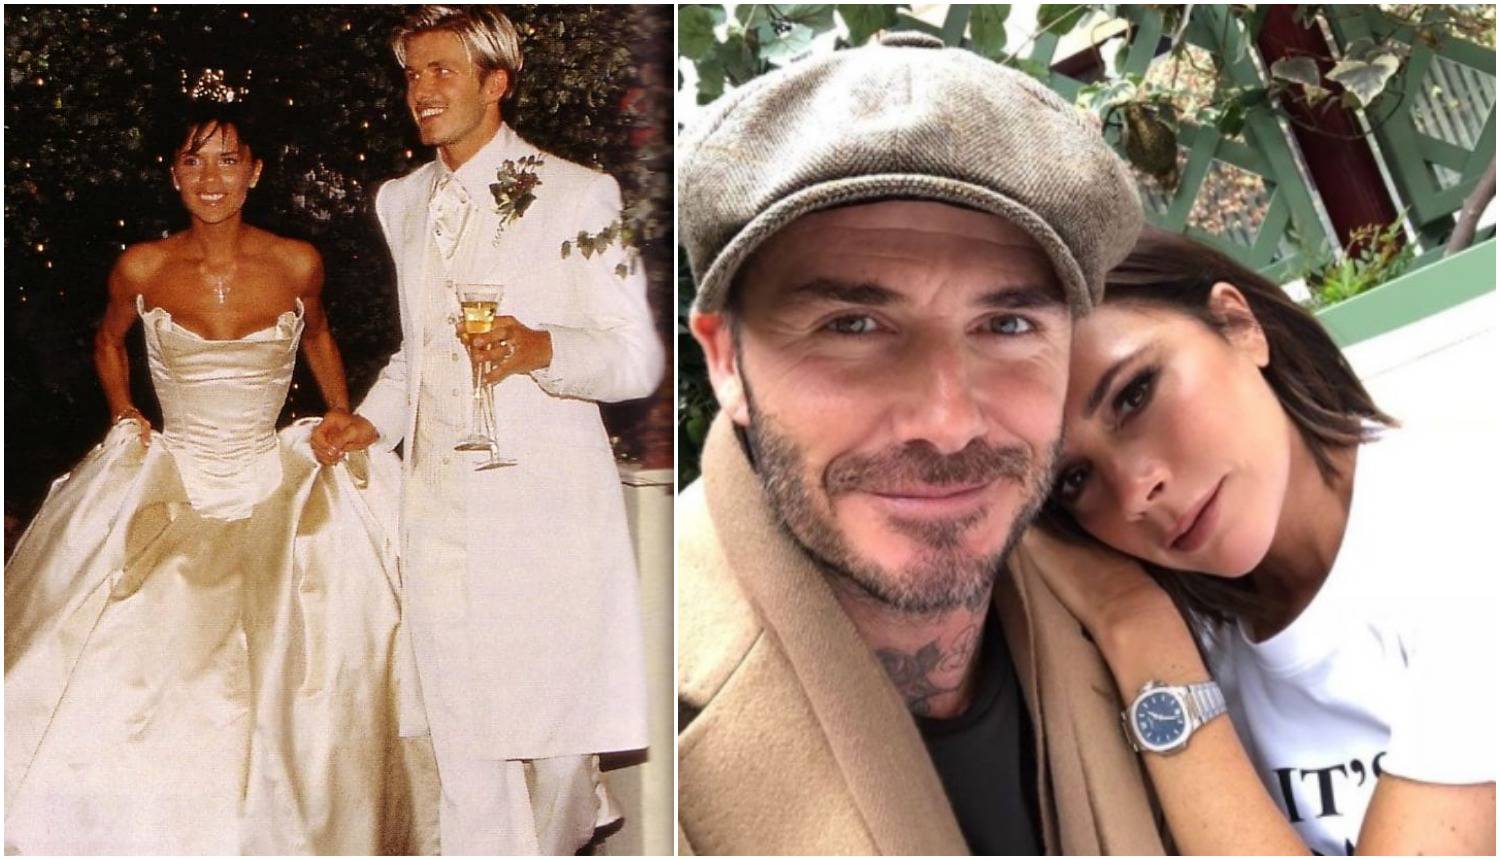 Beckhamovi 21 godinu u braku: Varali su često, sve zataškavali, a opstali su jer se obožavaju